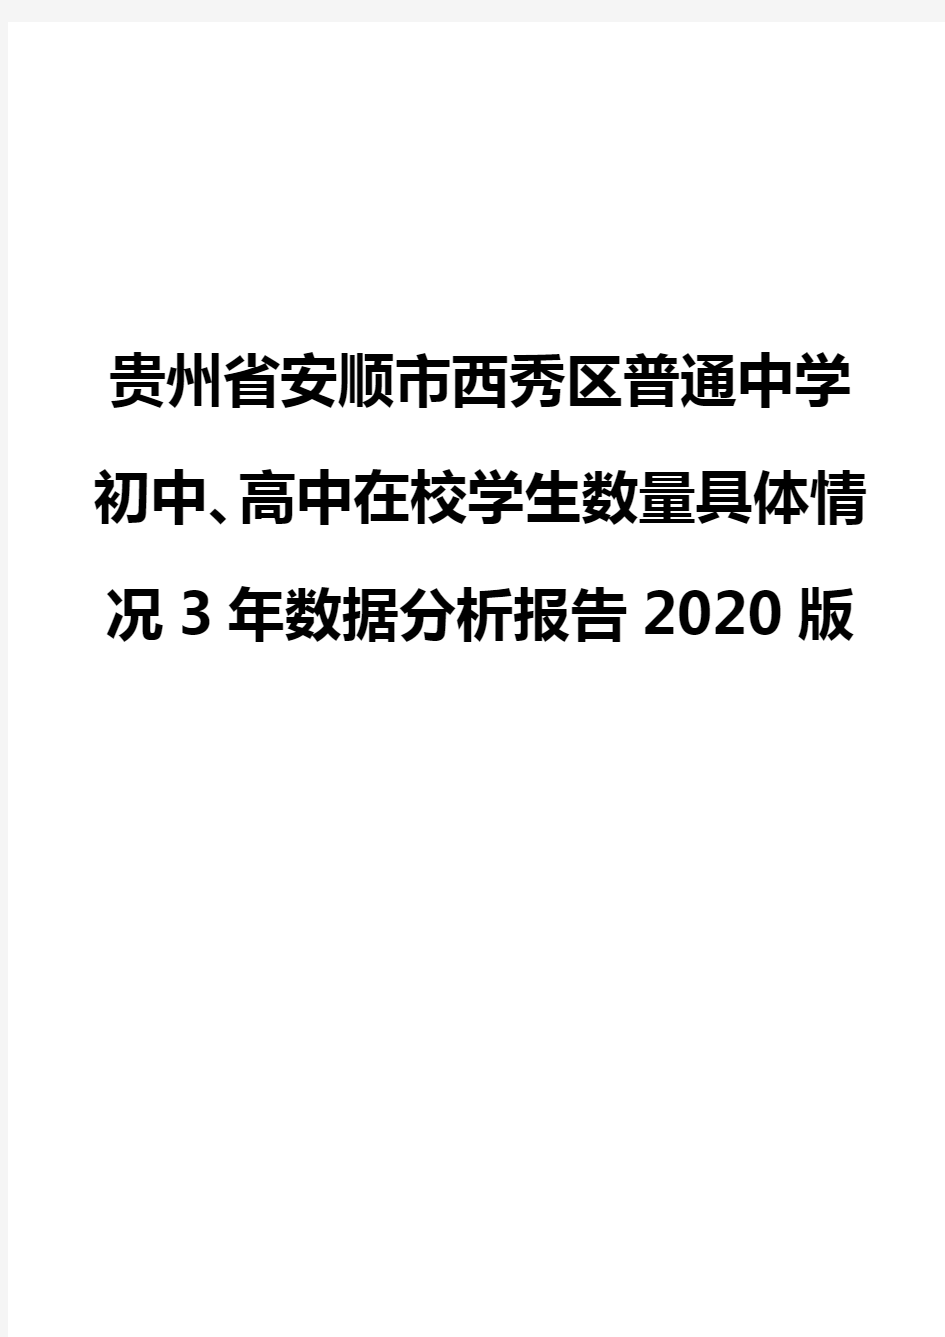 贵州省安顺市西秀区普通中学初中、高中在校学生数量具体情况3年数据分析报告2020版